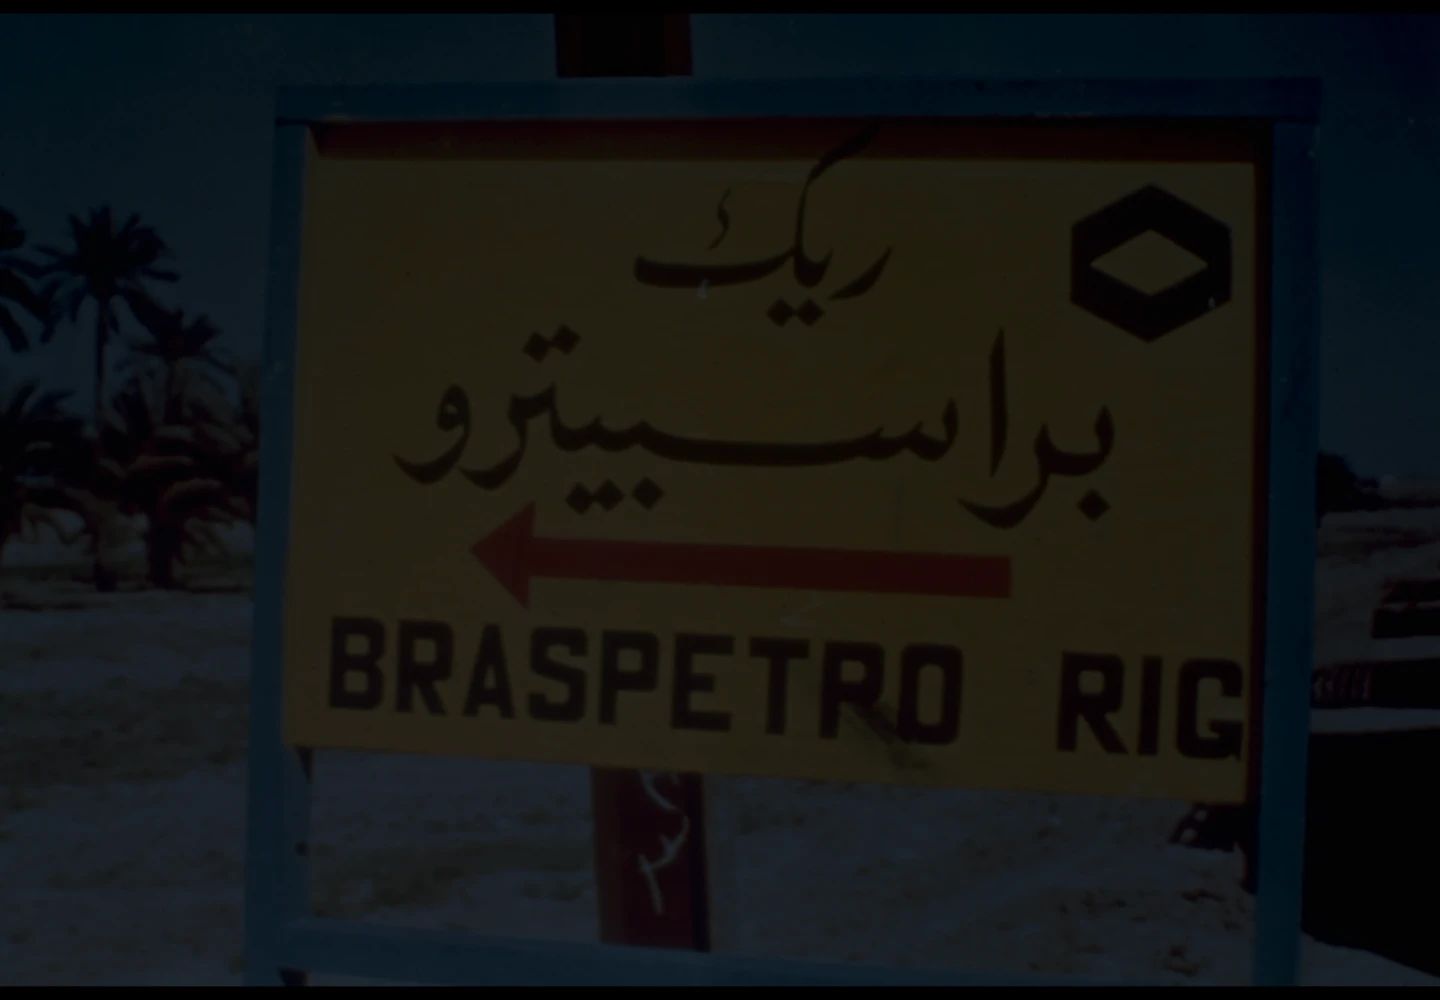 Fotografia antiga de uma placa com o texto “Braspetro Rig” abaixo de uma escrita em língua árabe.